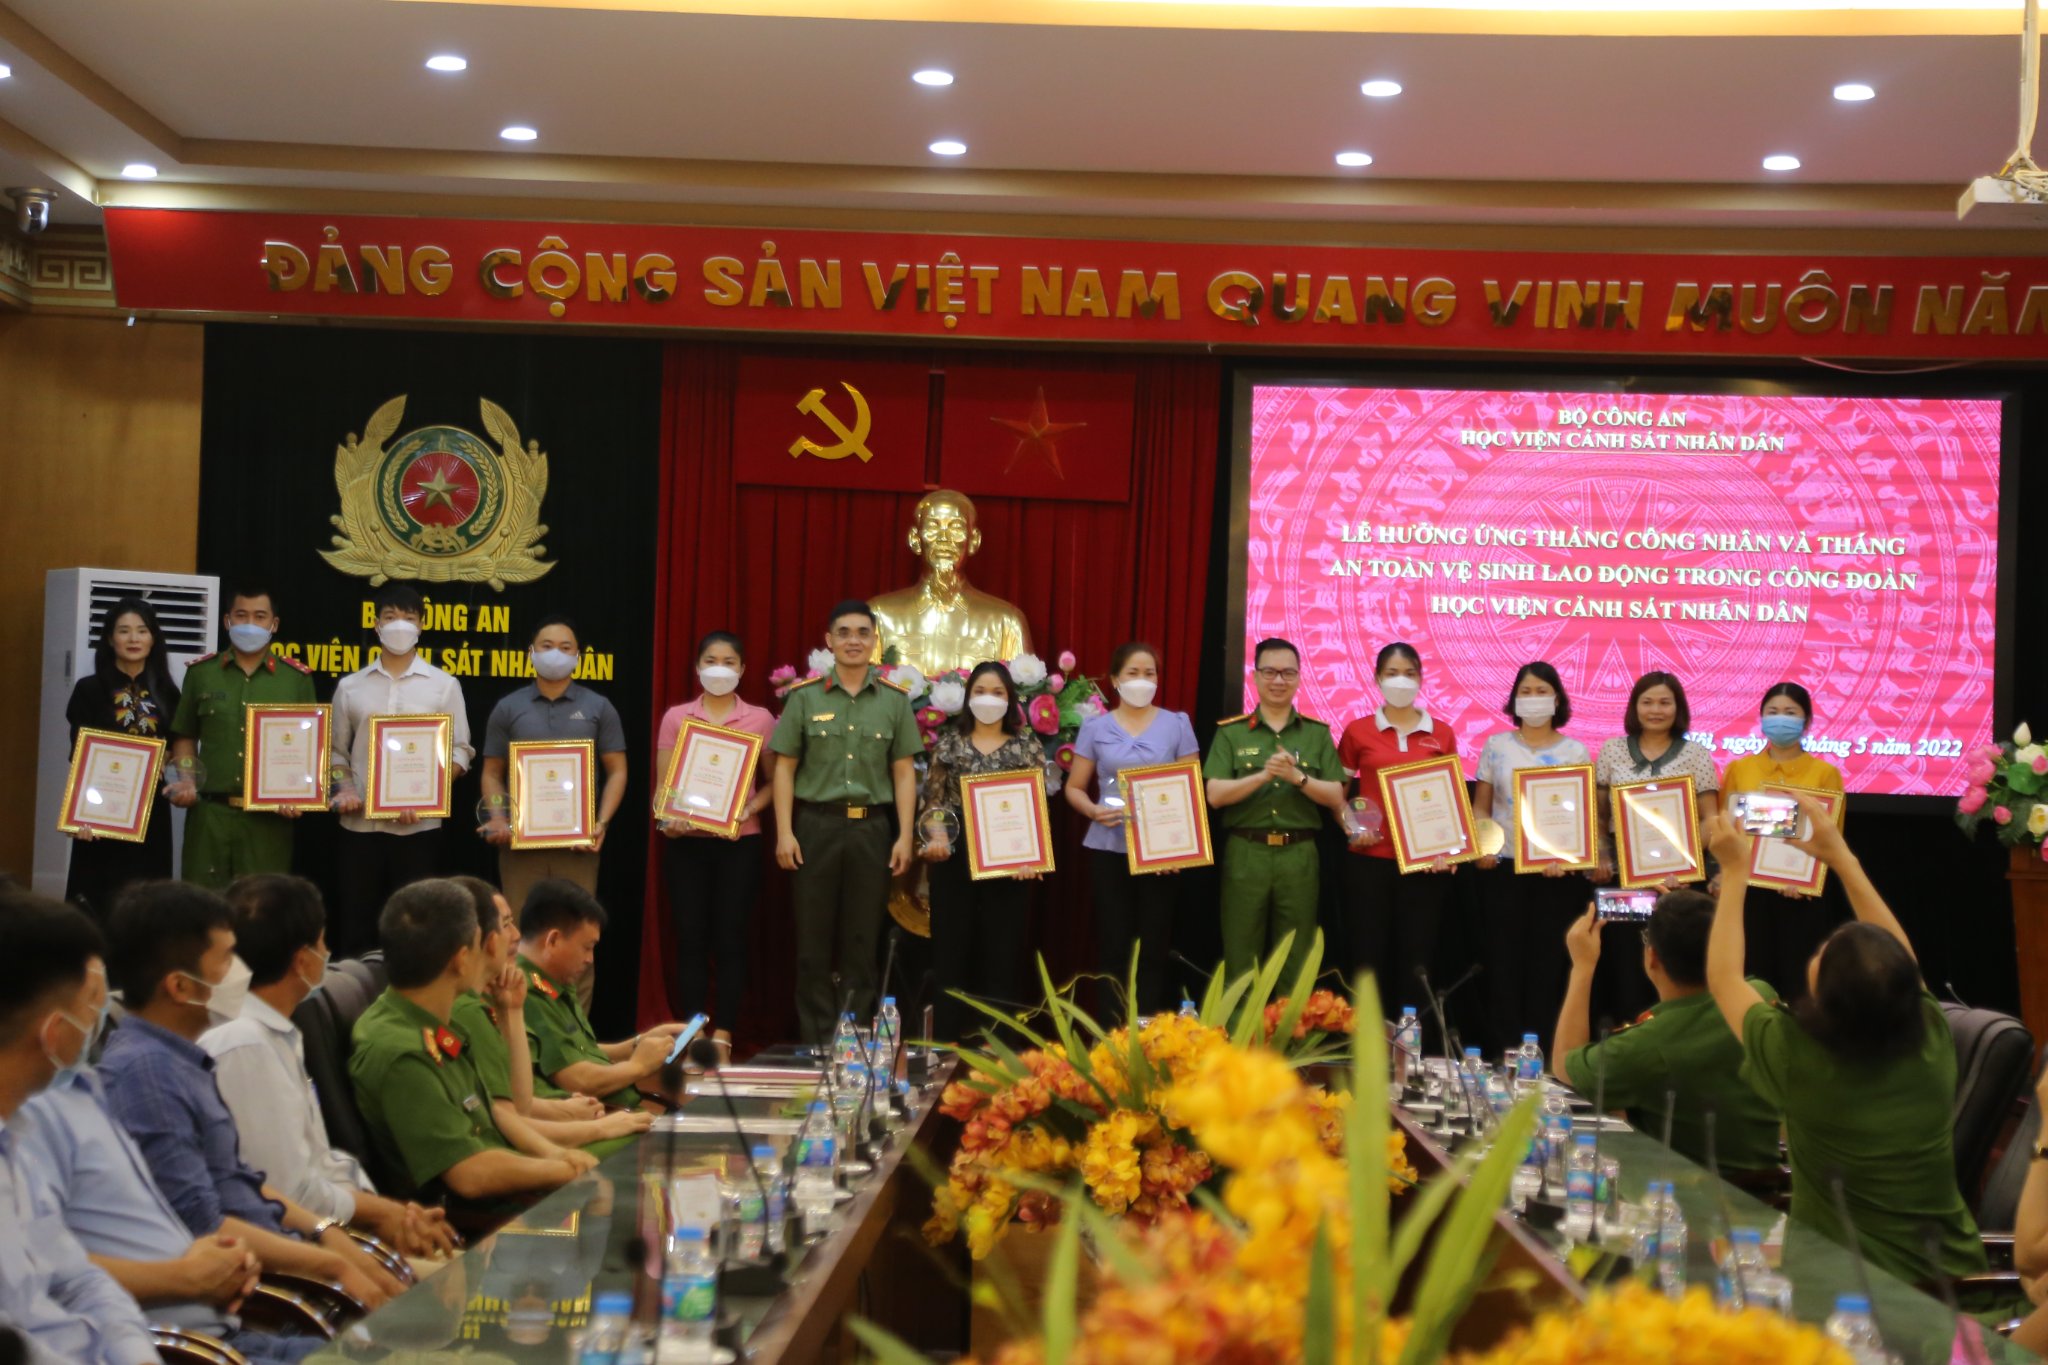 Thiếu tá Phạm Mạnh Tường - Phó Chủ tịch Công đoàn CAND và Thiếu tá Bùi Mạnh Linh - Phó Trưởng CTĐ&CTCT trao chứng nhận cho các cá nhân xuất sắc